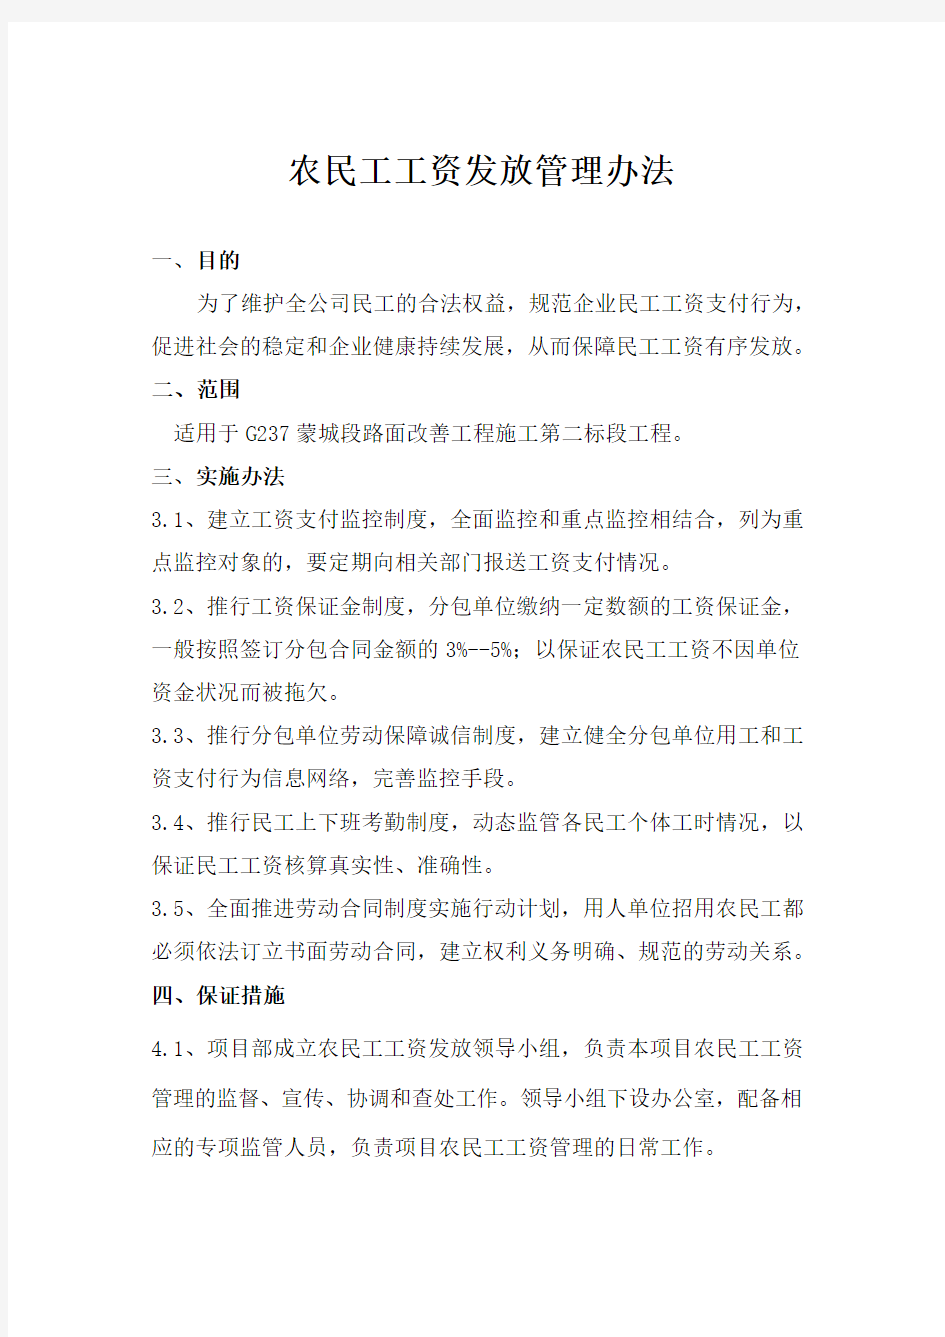 上海工程加强农民工工资发放管理办法